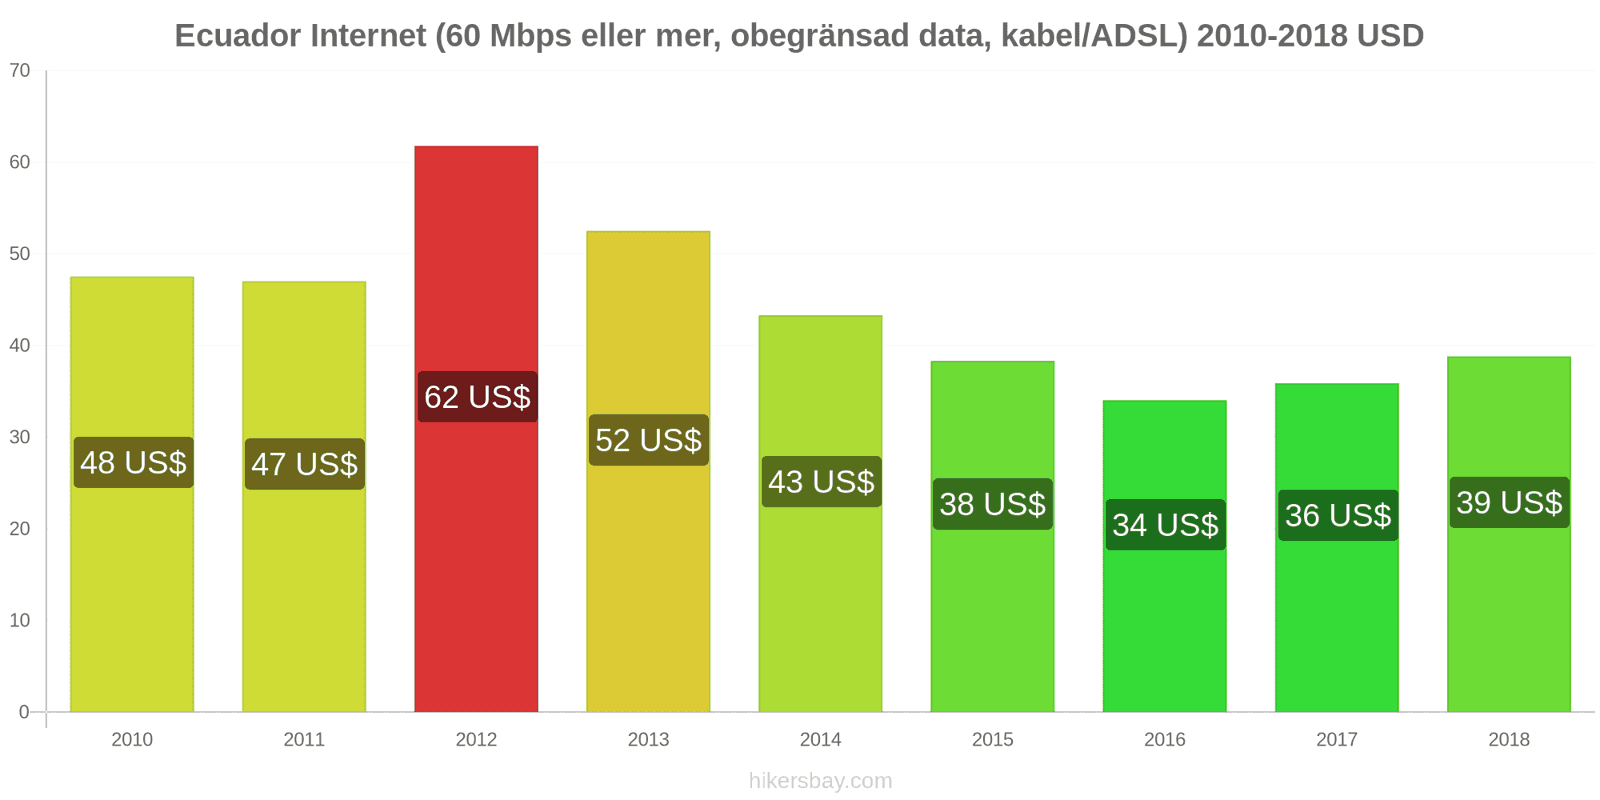 Ecuador prisändringar Internet (60 Mbps eller mer, obegränsad data, kabel/ADSL) hikersbay.com